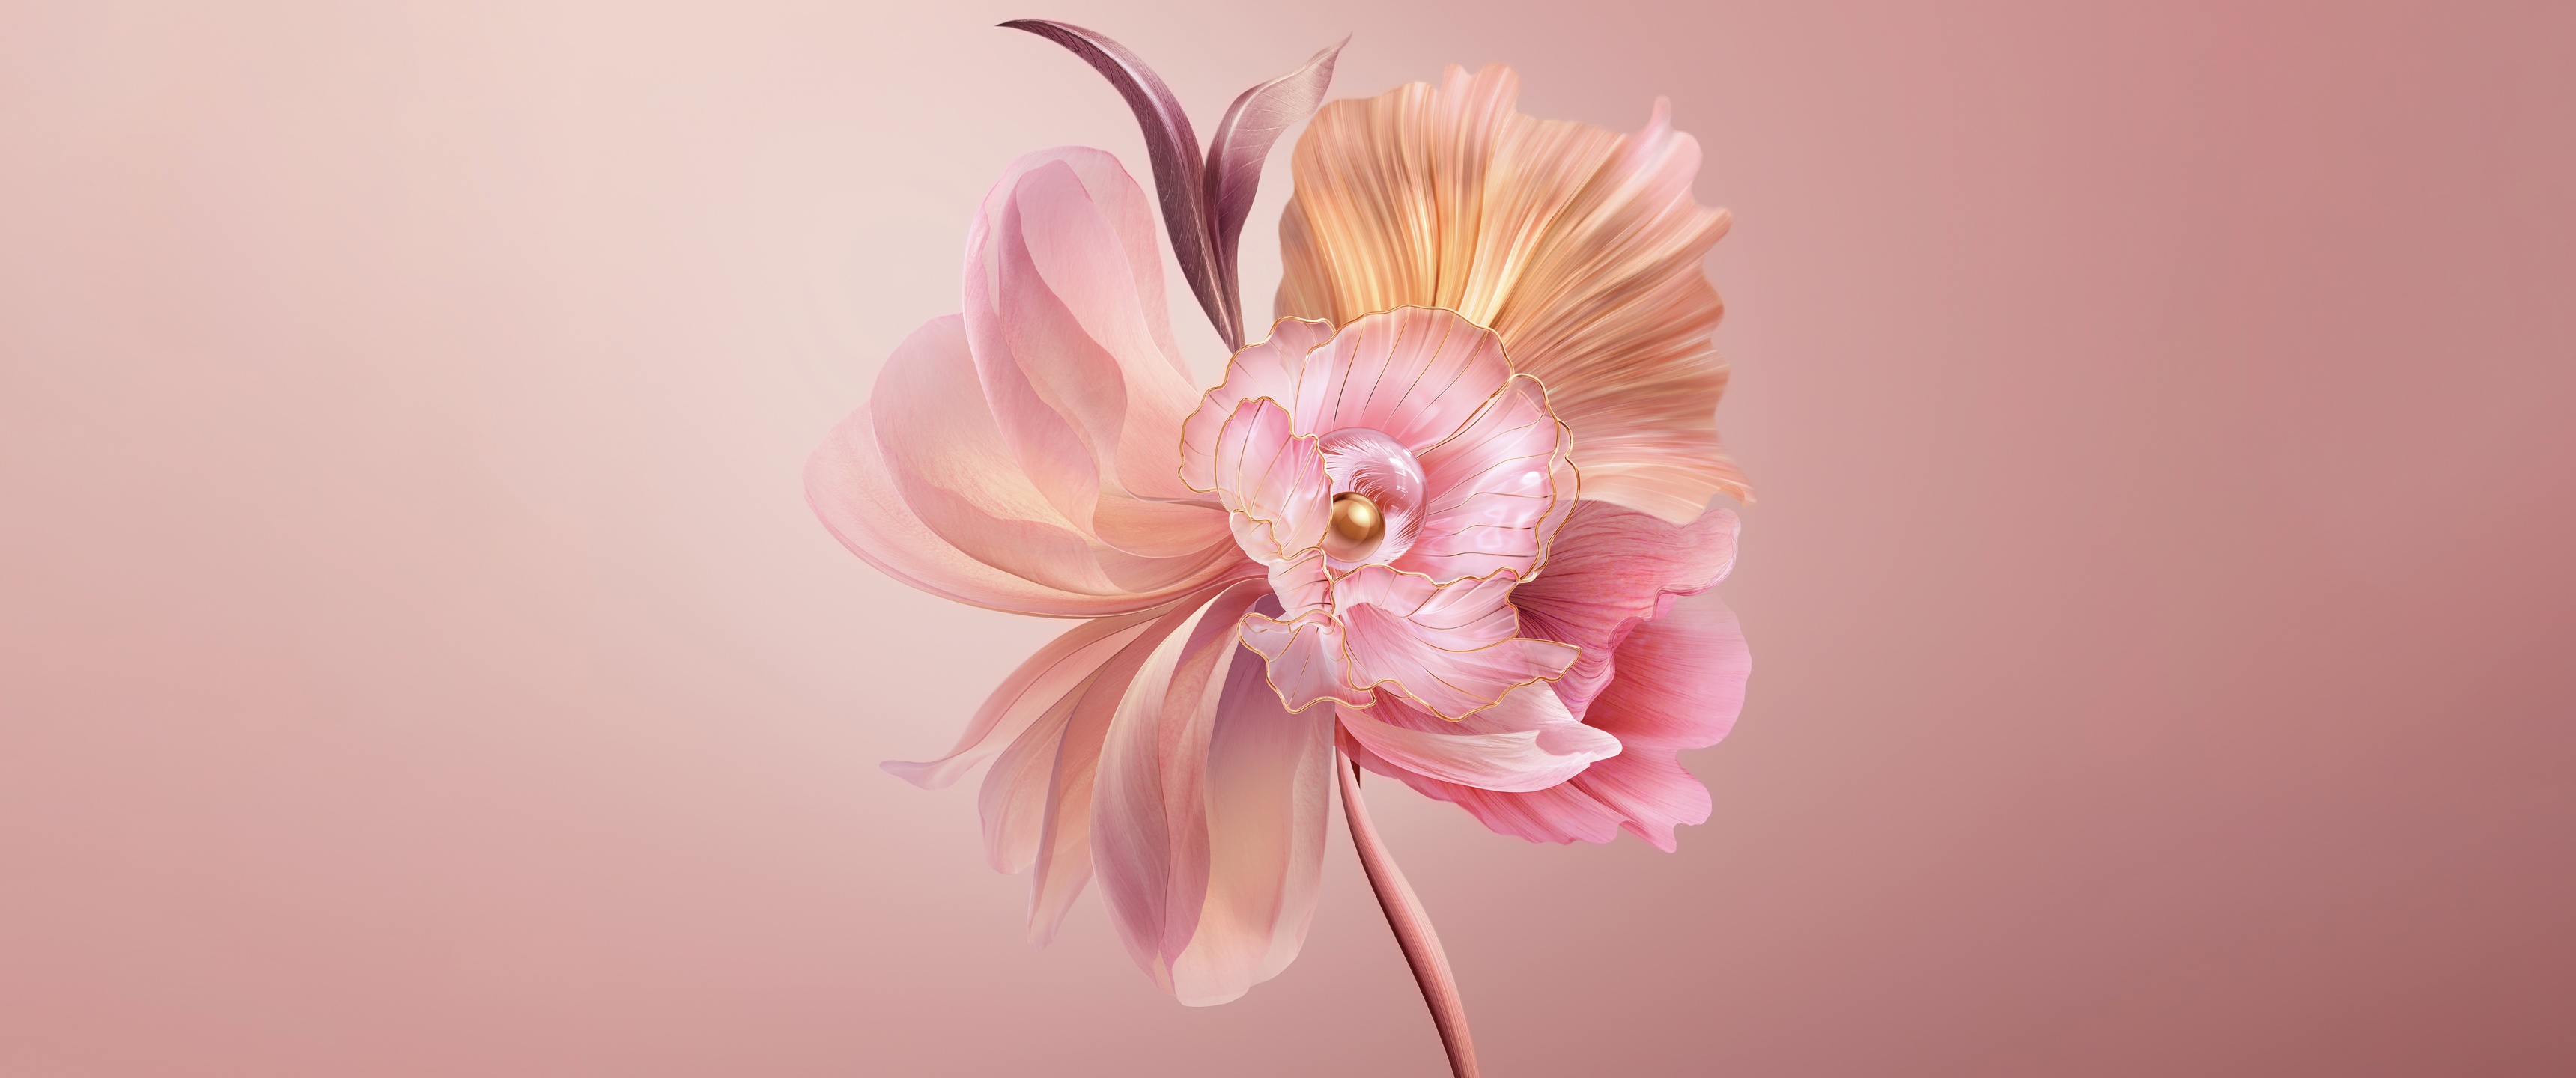 flower wallpaper hd desktop